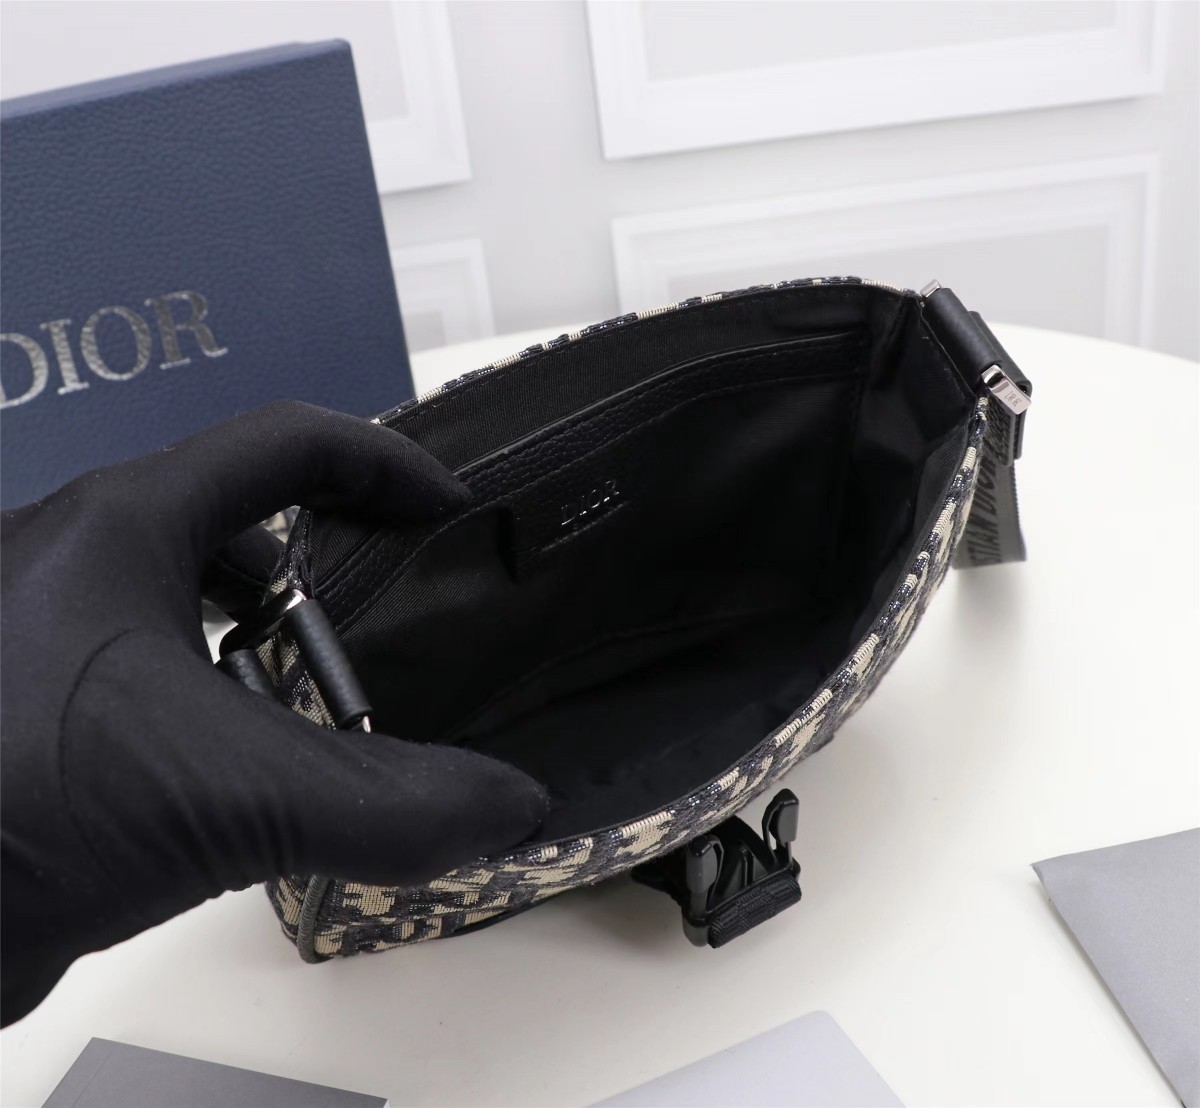 这款DiorExplorer手袋从经